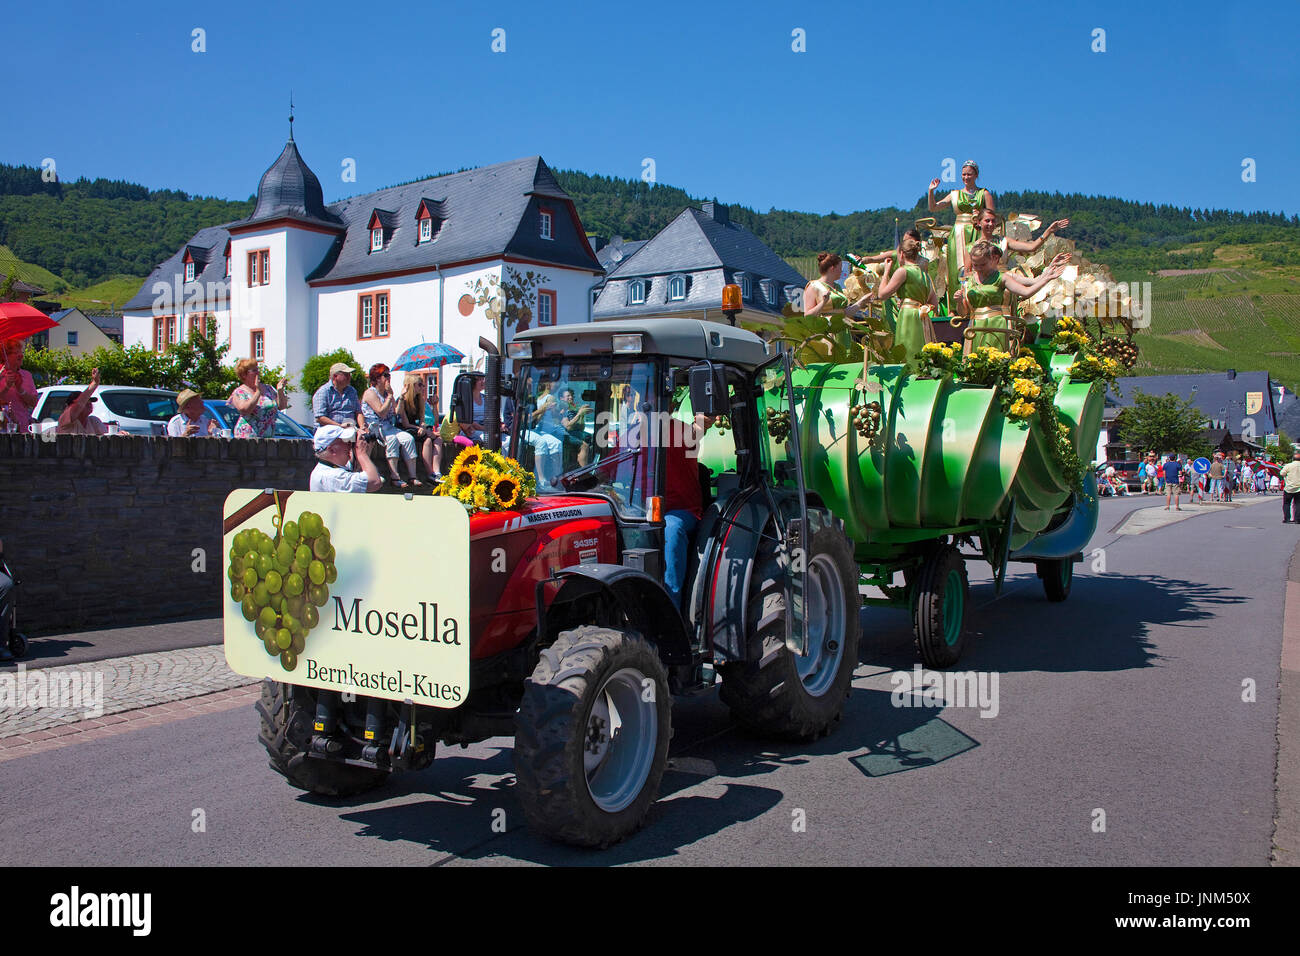 Festwagen Mosella Bernkastel beim internationalen Trachtenfest in Kröv, Mosel, Mittelmosel, Rheinland-Pfalz, Deutschland, Europa | International festi Stock Photo